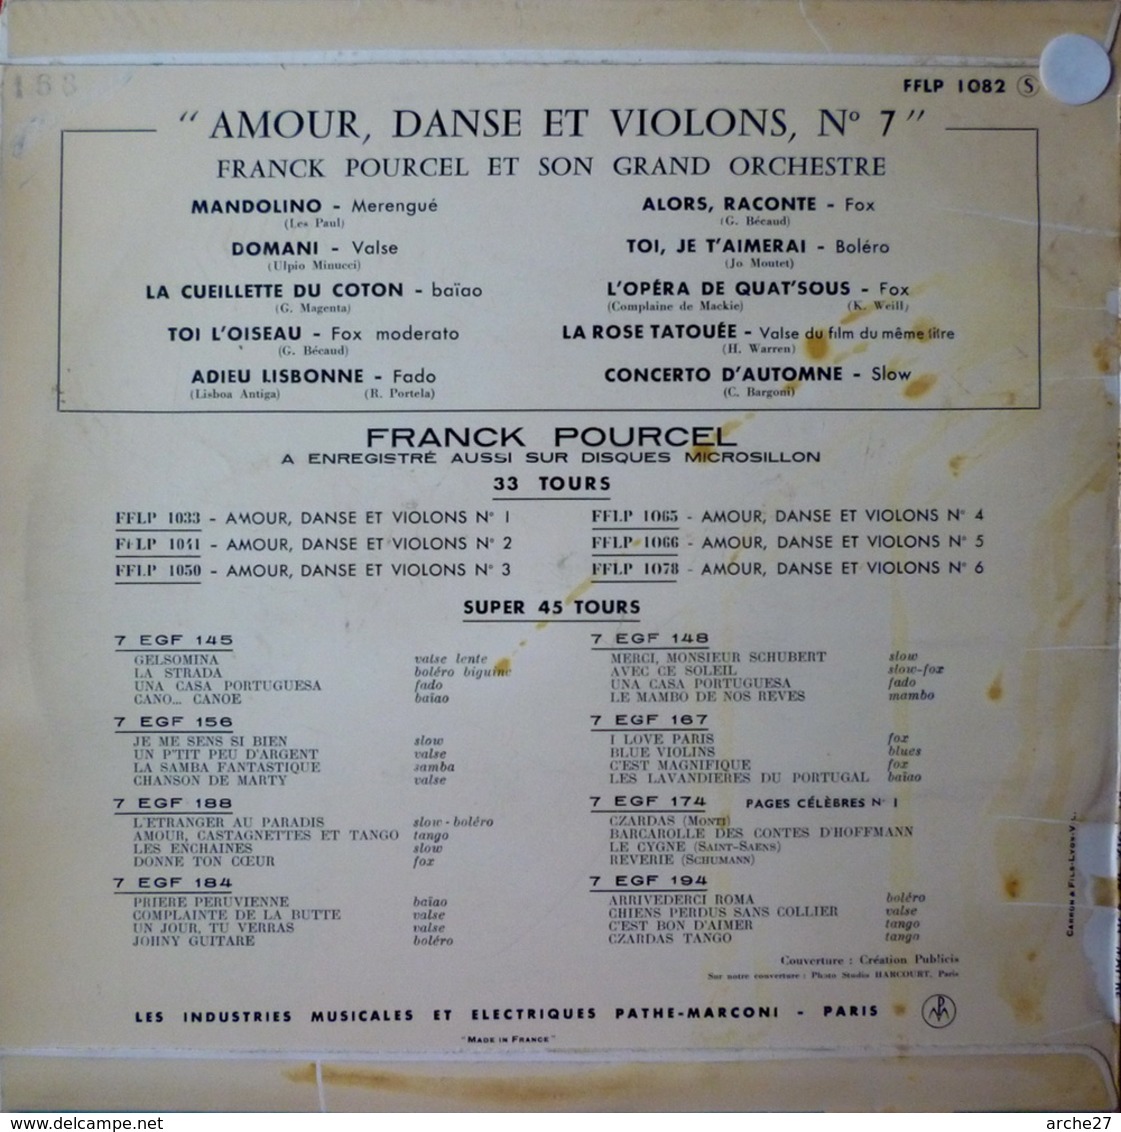 FRANCK POURCEL - 25 Cm - 33T - Disque Vinyle - Amour Danse Et Violons - 1082 - Musicales